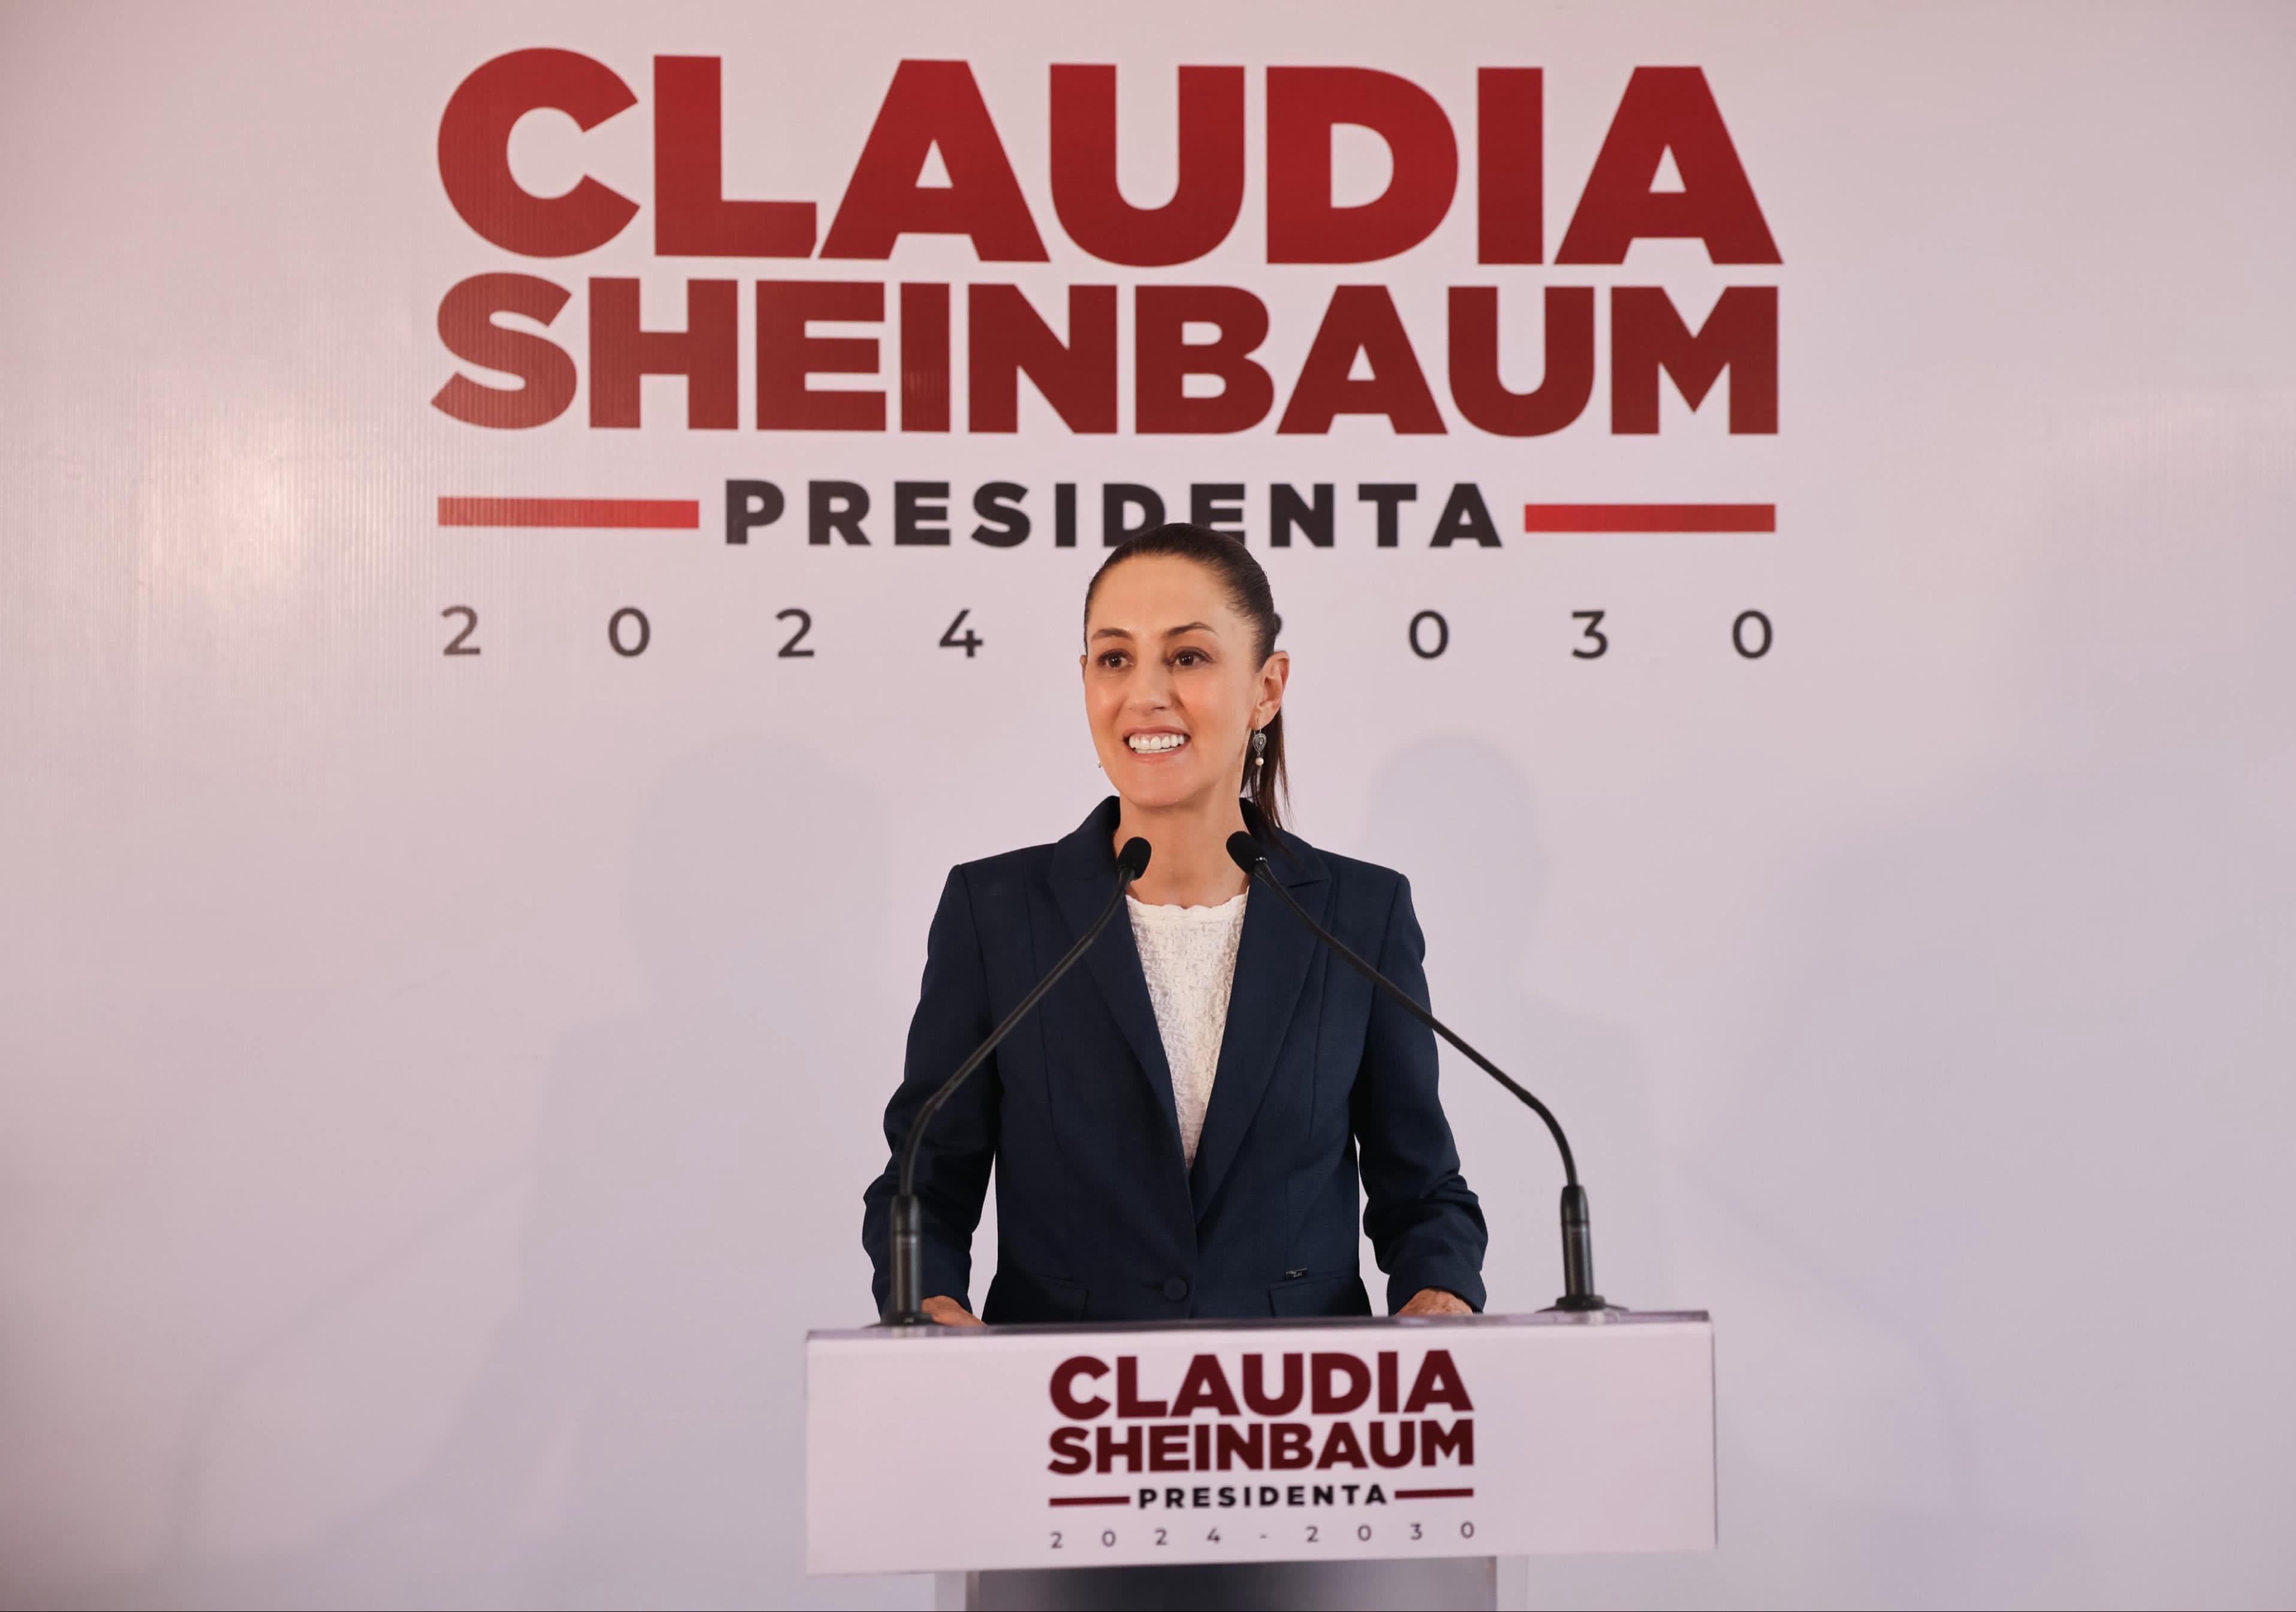 Las finanzas en México son sanas y no habrá nuevos impuestos ni reforma fiscal profunda: Claudia Sheinbaum